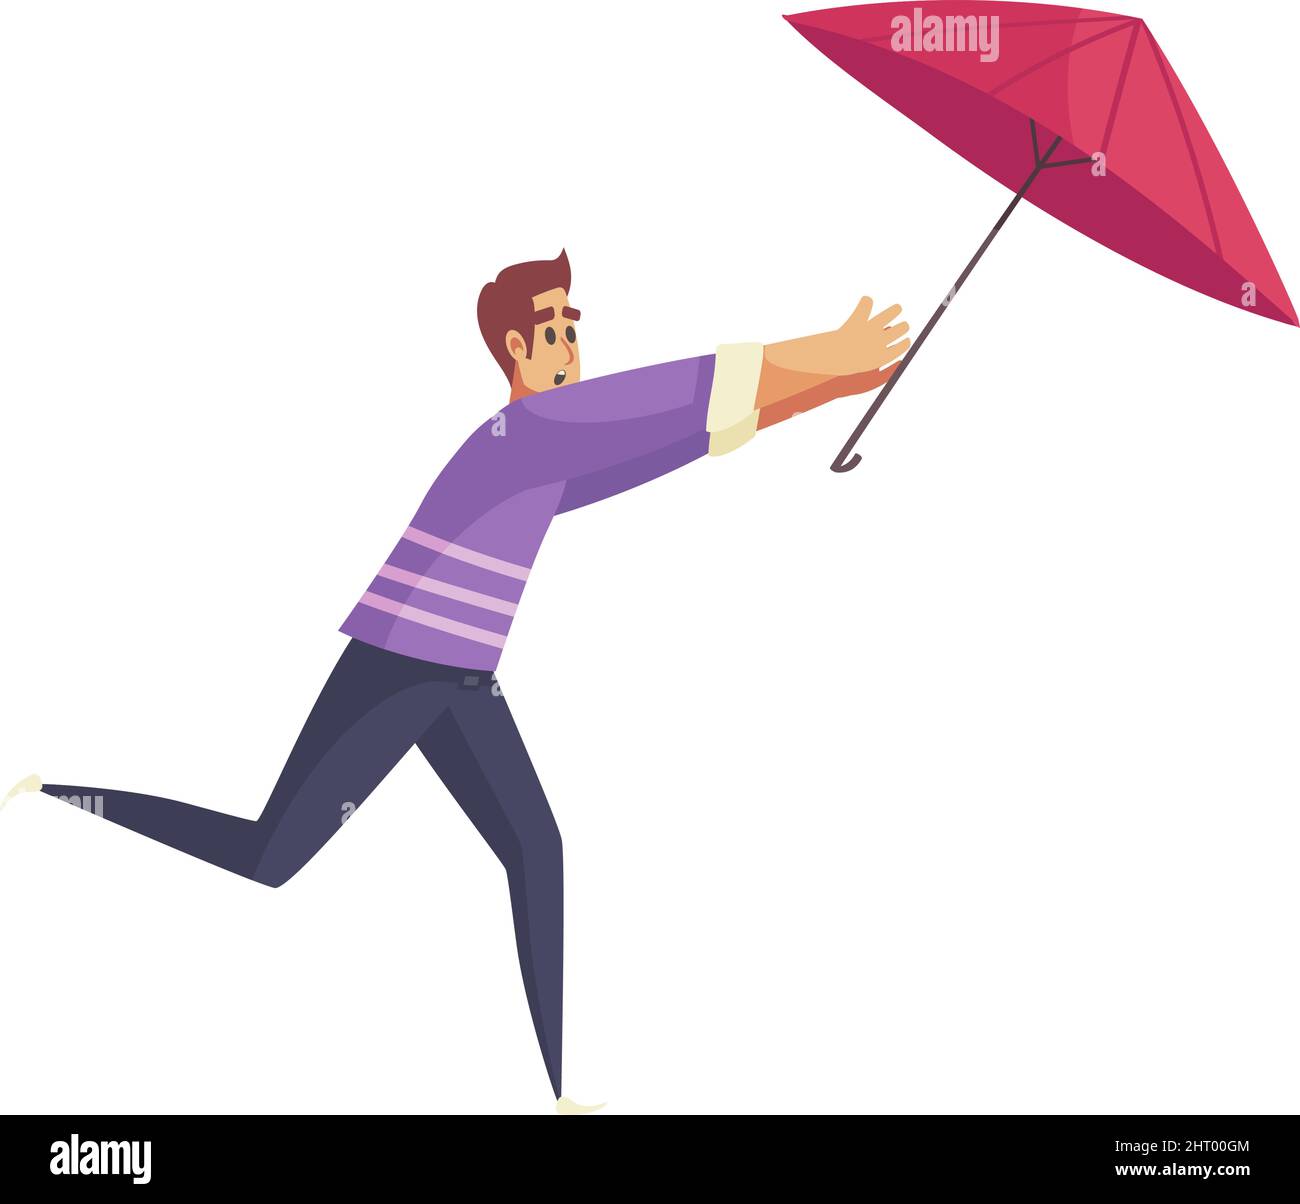 Composition de pluie de mauvais temps avec caractère isolé de l'homme courant pour l'illustration de vecteur de parapluie soufflé Illustration de Vecteur